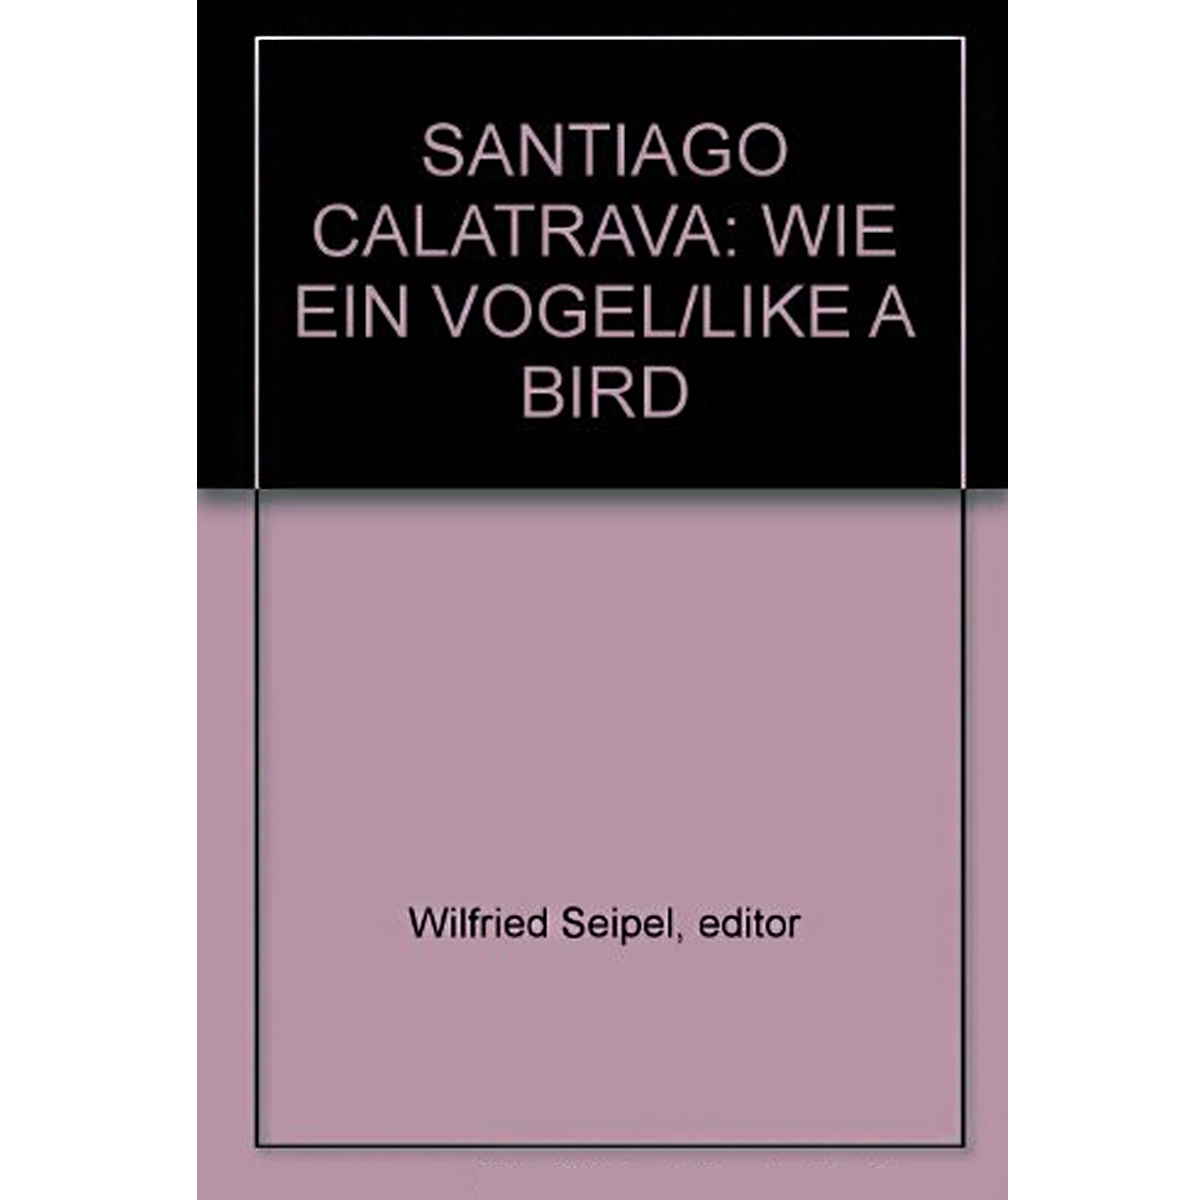 Santiago Calatrava Wie ein Vogel / Like a Bird